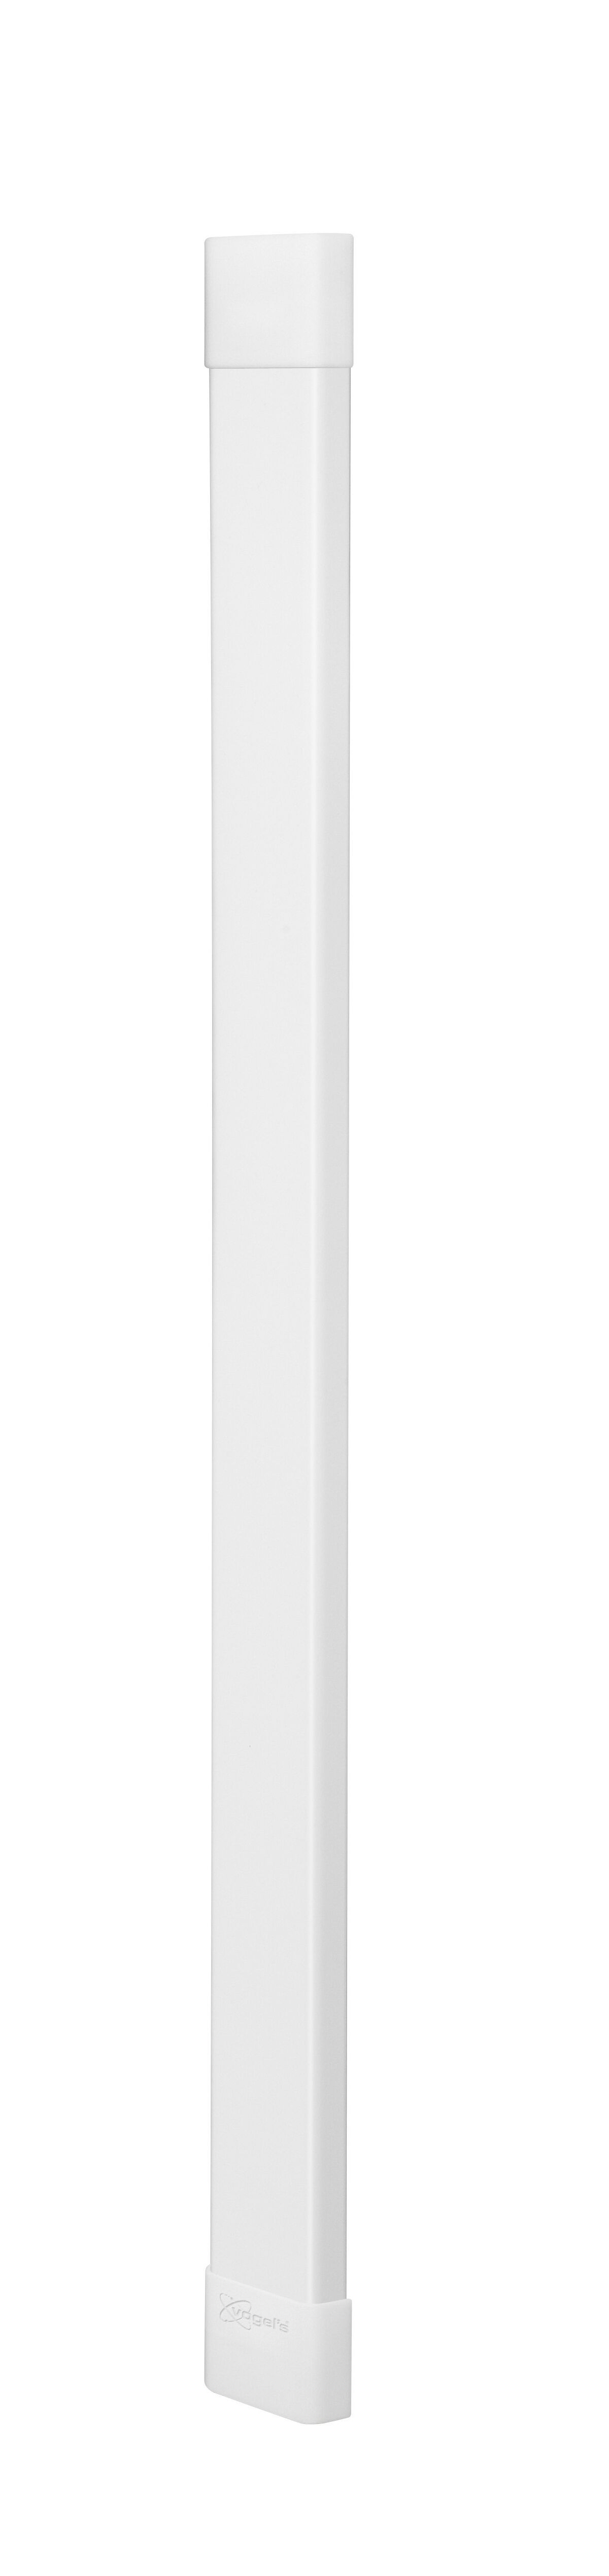 Vogel's CABLE 8 Canalina (bianco) - Numero massimo di cavi da contenere: Fino a 8 cavi - Lunghezza: 94 cm - Product